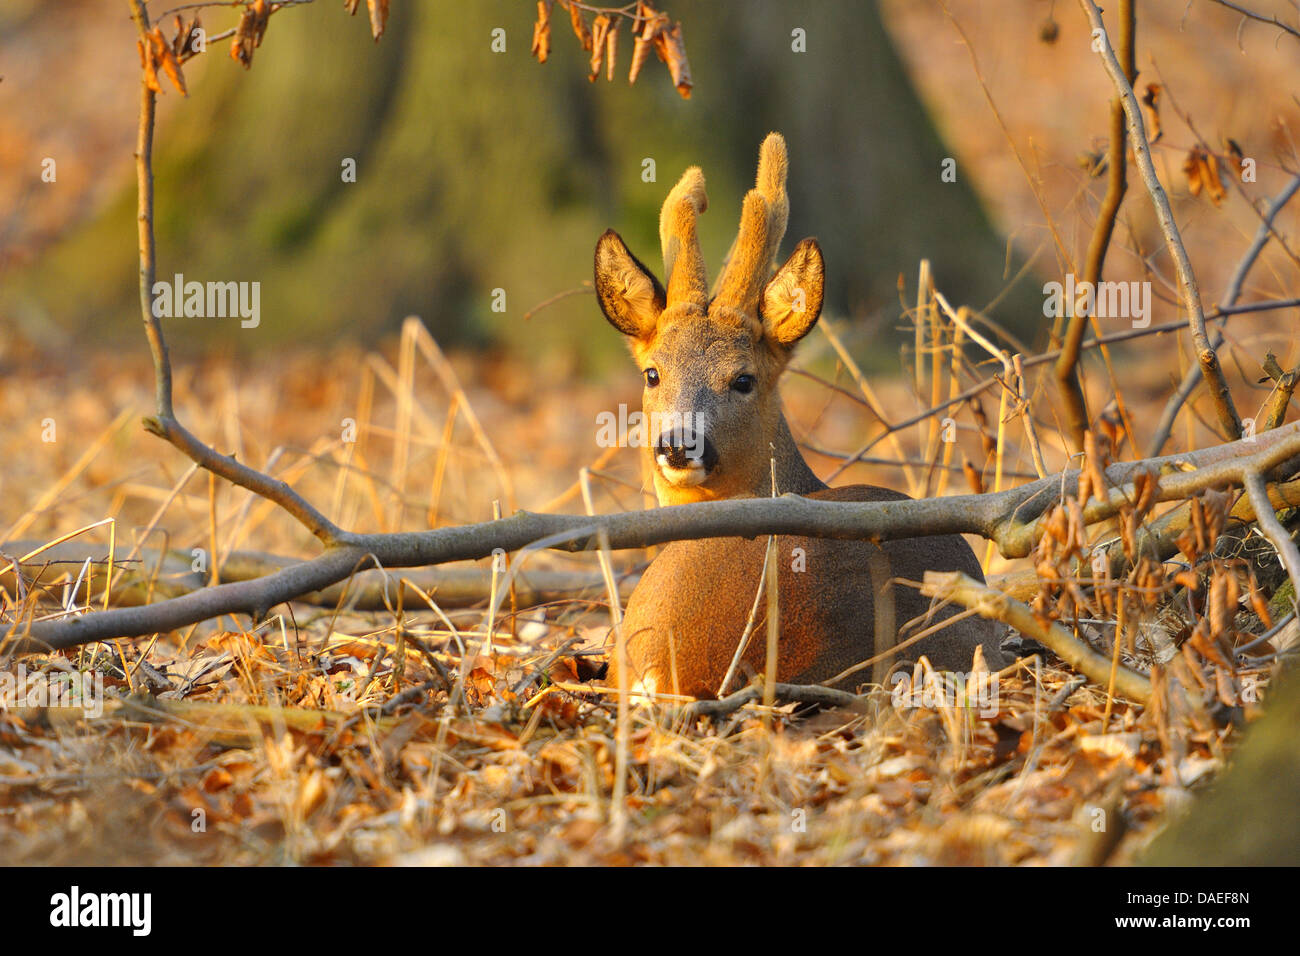 roe deer (Capreolus capreolus), roebuck with winterfur, Germany, Hesse Stock Photo